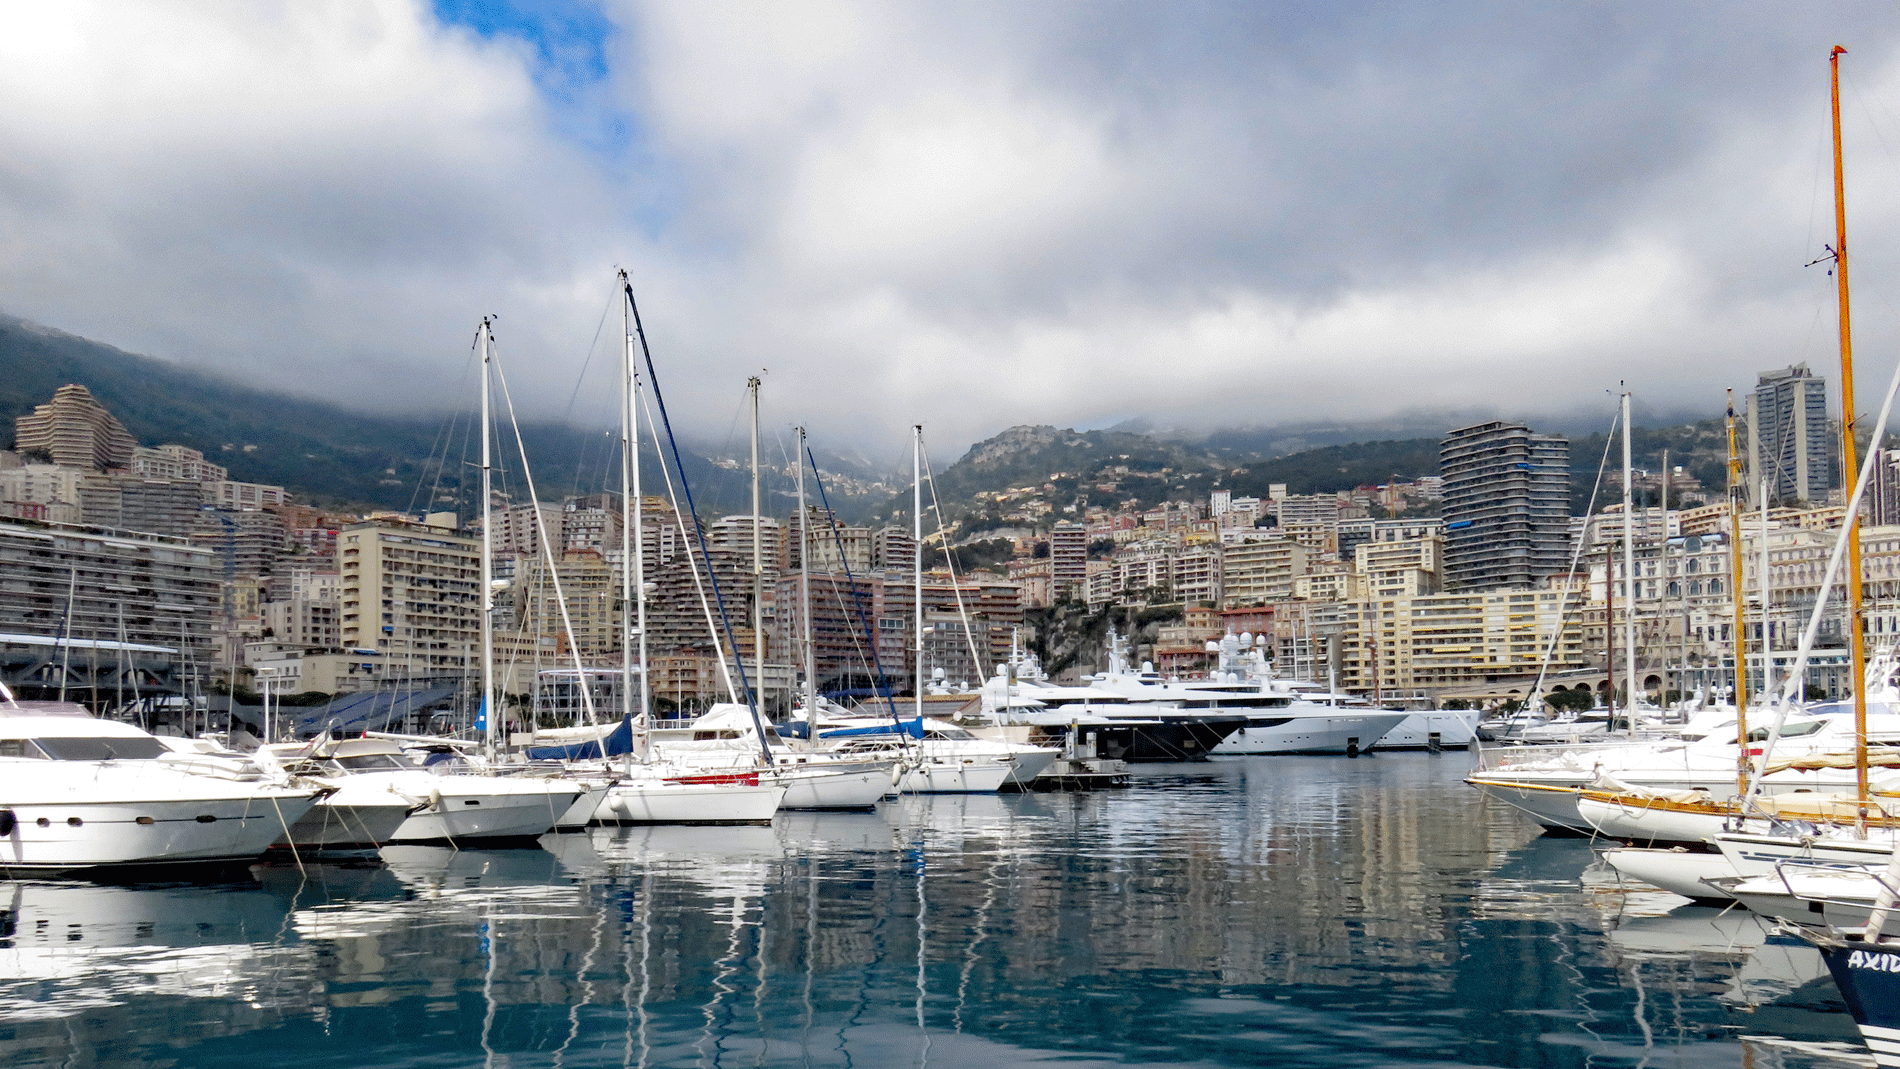 Day 103, Monte Carlo, Monaco